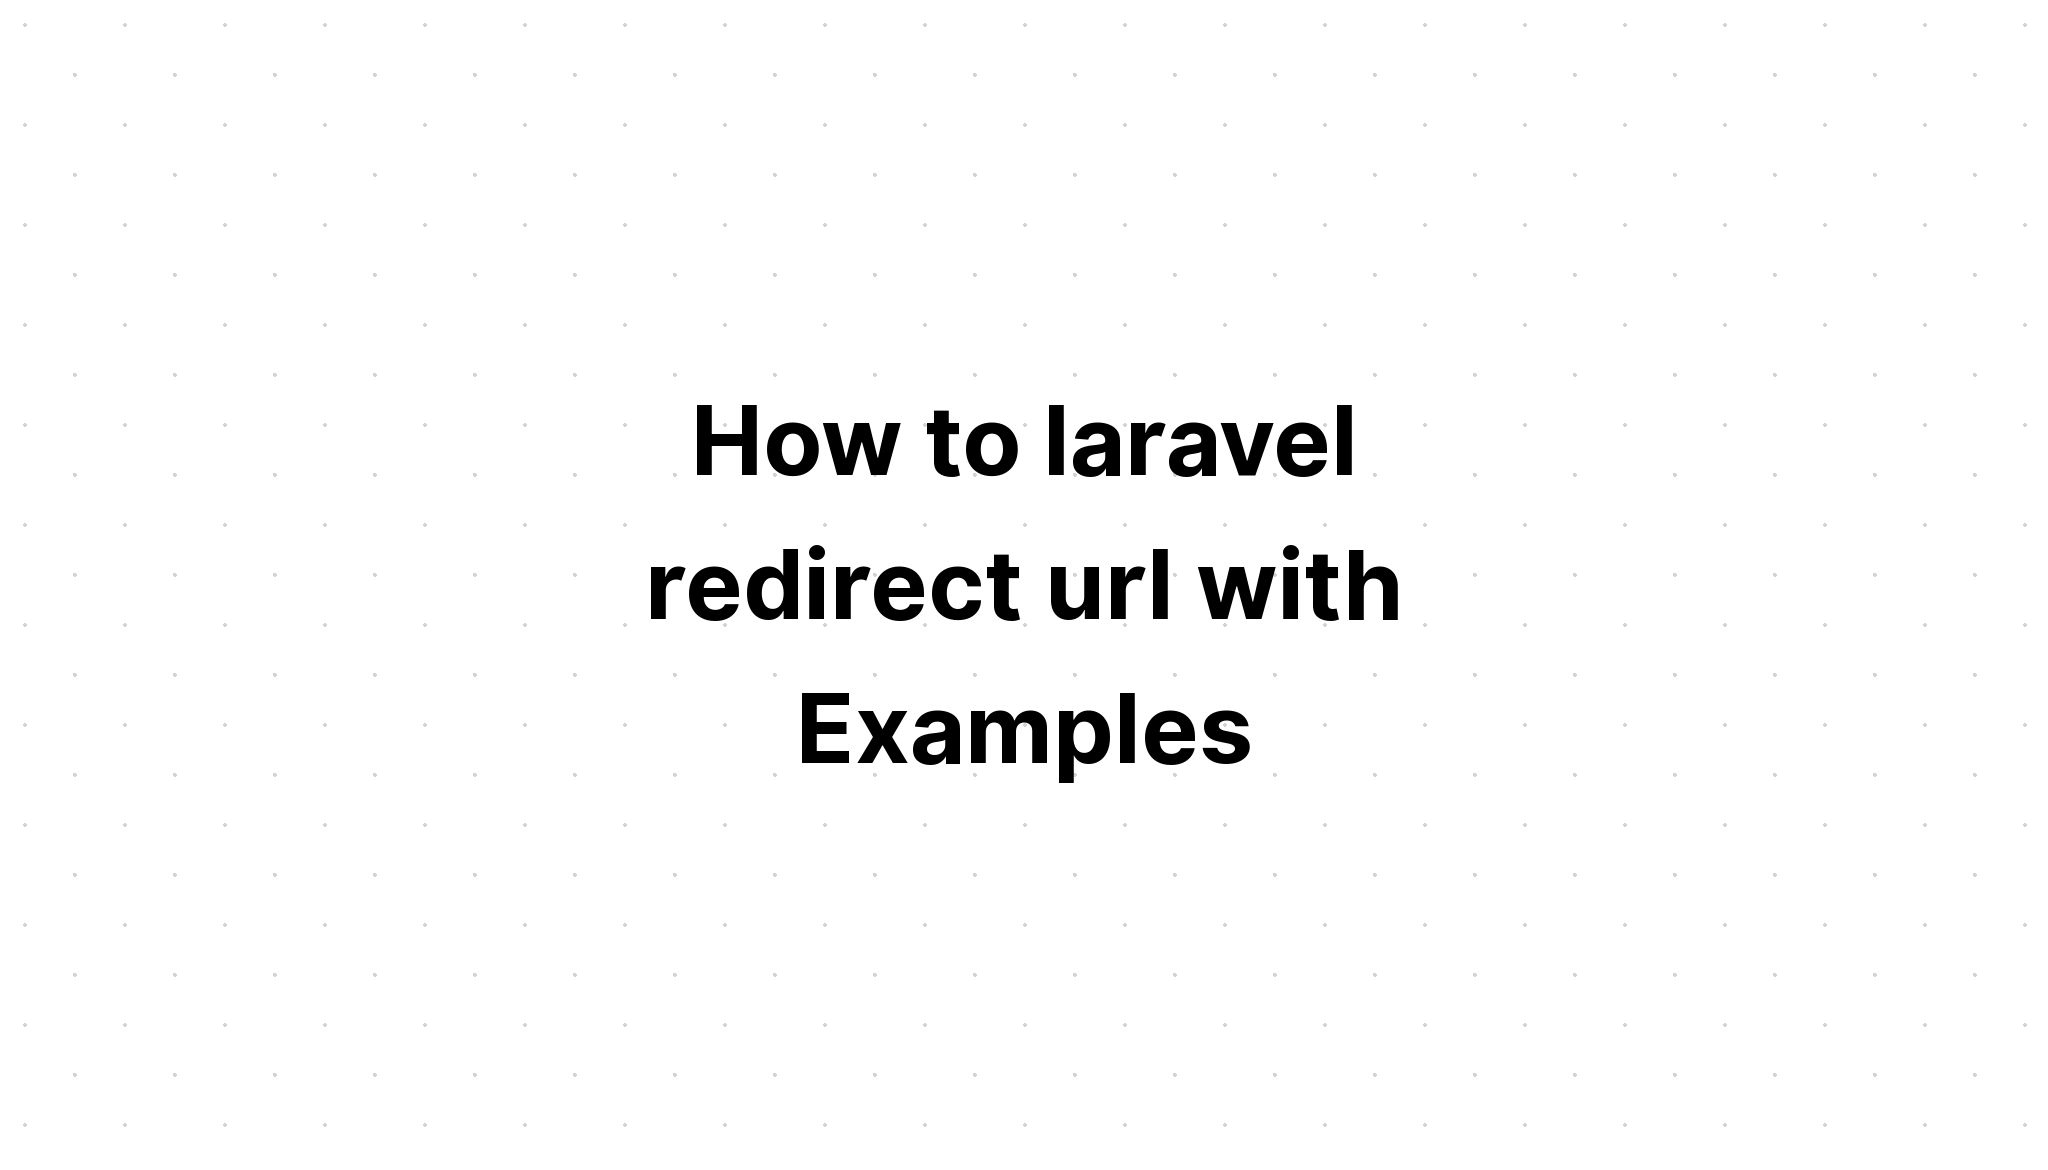 Làm thế nào để laravel chuyển hướng url với các ví dụ